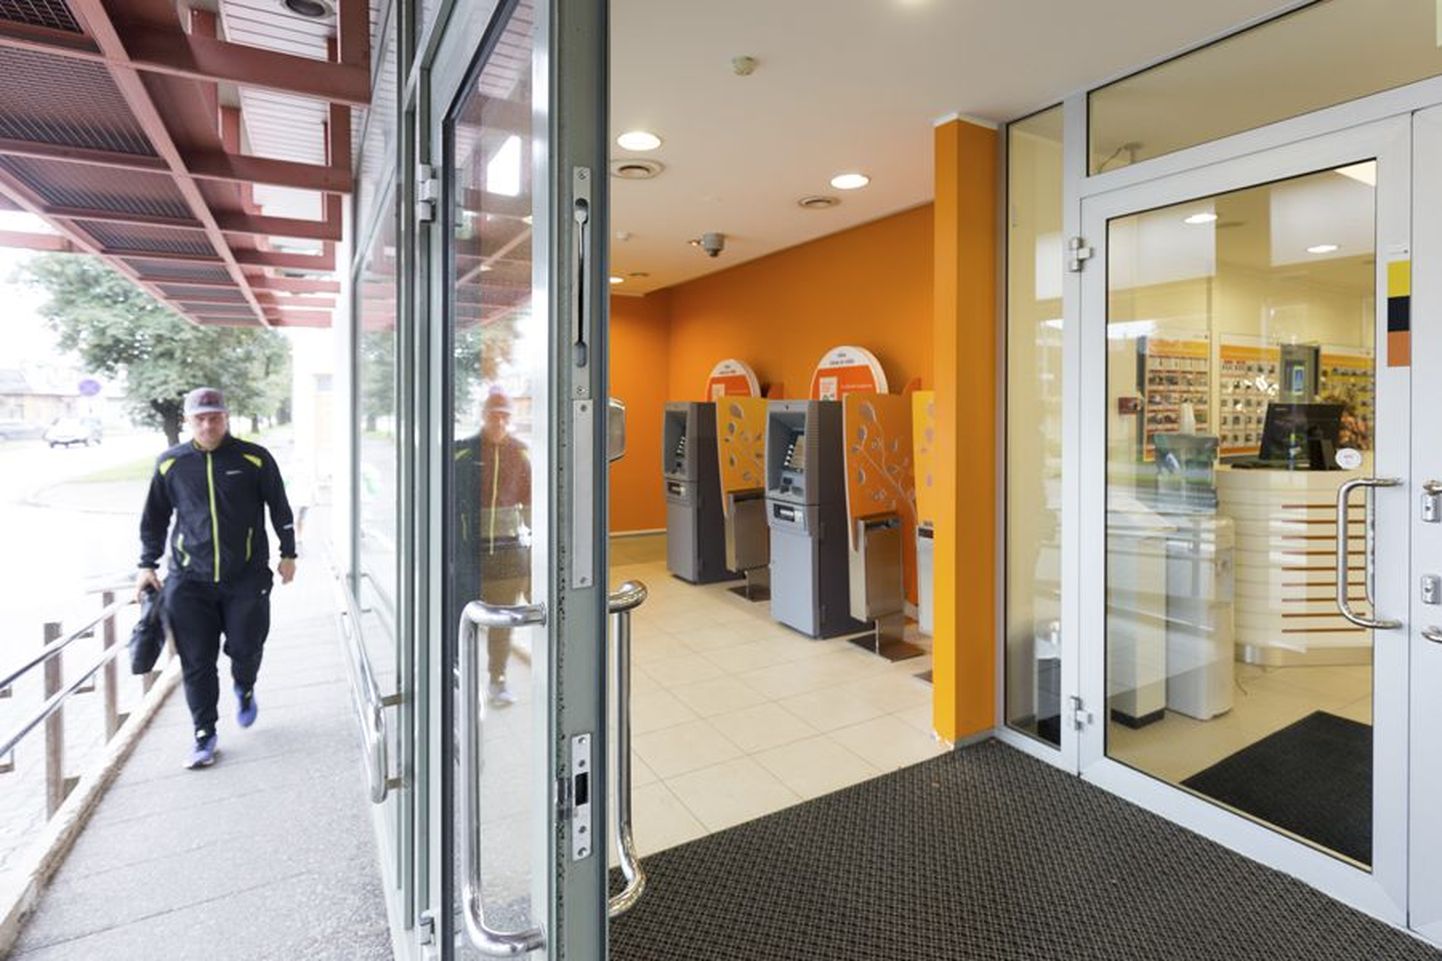 Swedbanki Viljandi kontori rahaautomaate on hiljuti tabanud mitu riket.